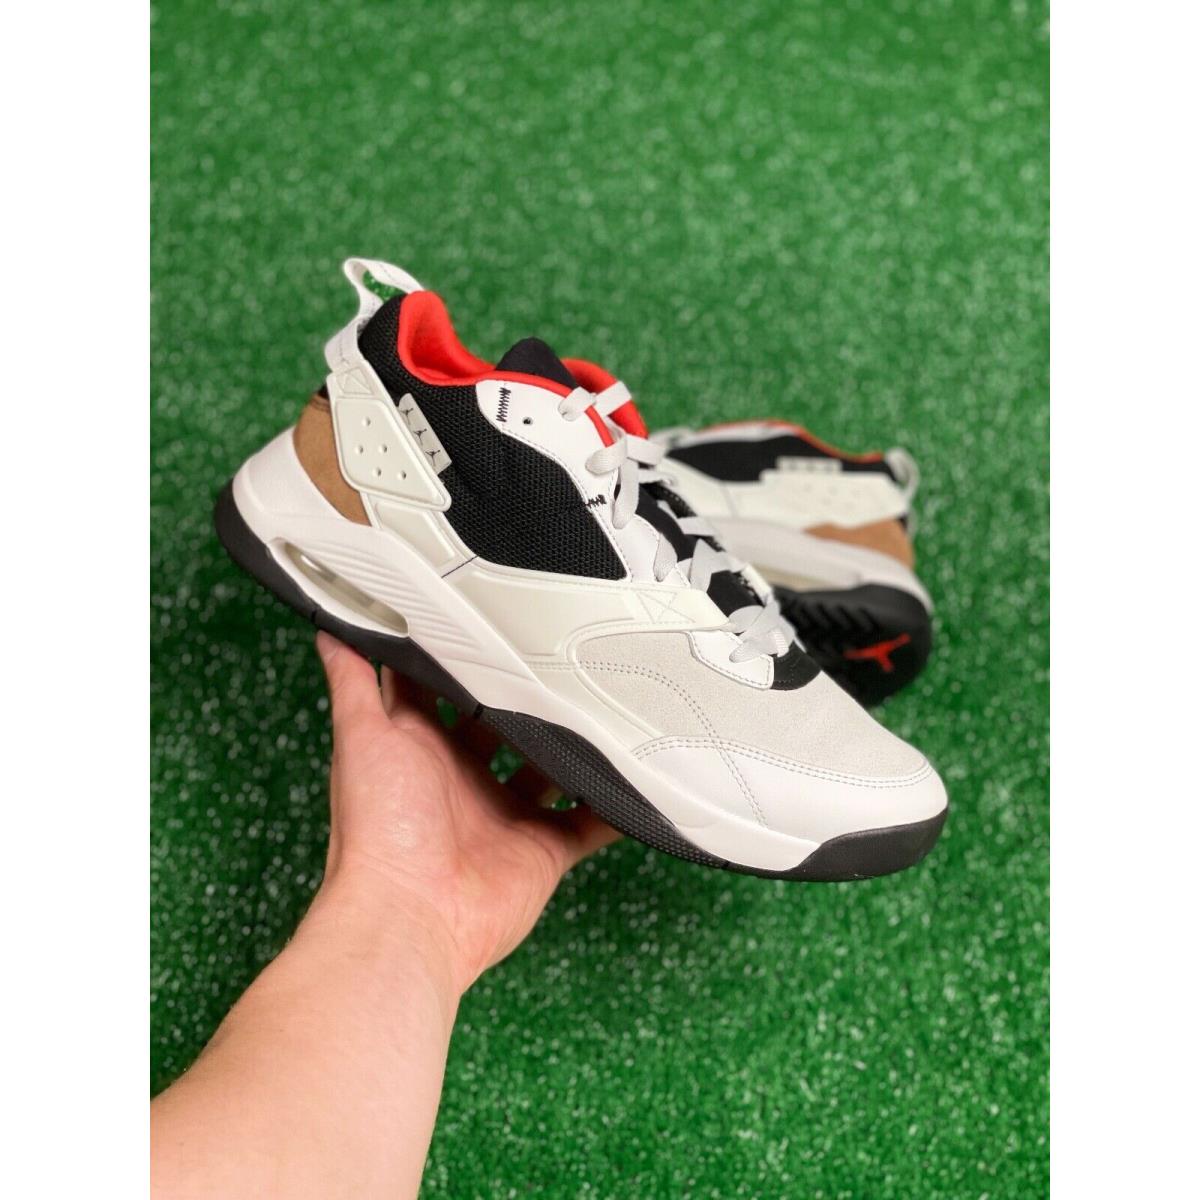 Nike Jordan Air Nfh Low Mens Basketball Shoes White Red CZ3984-102 Multi Sz - White